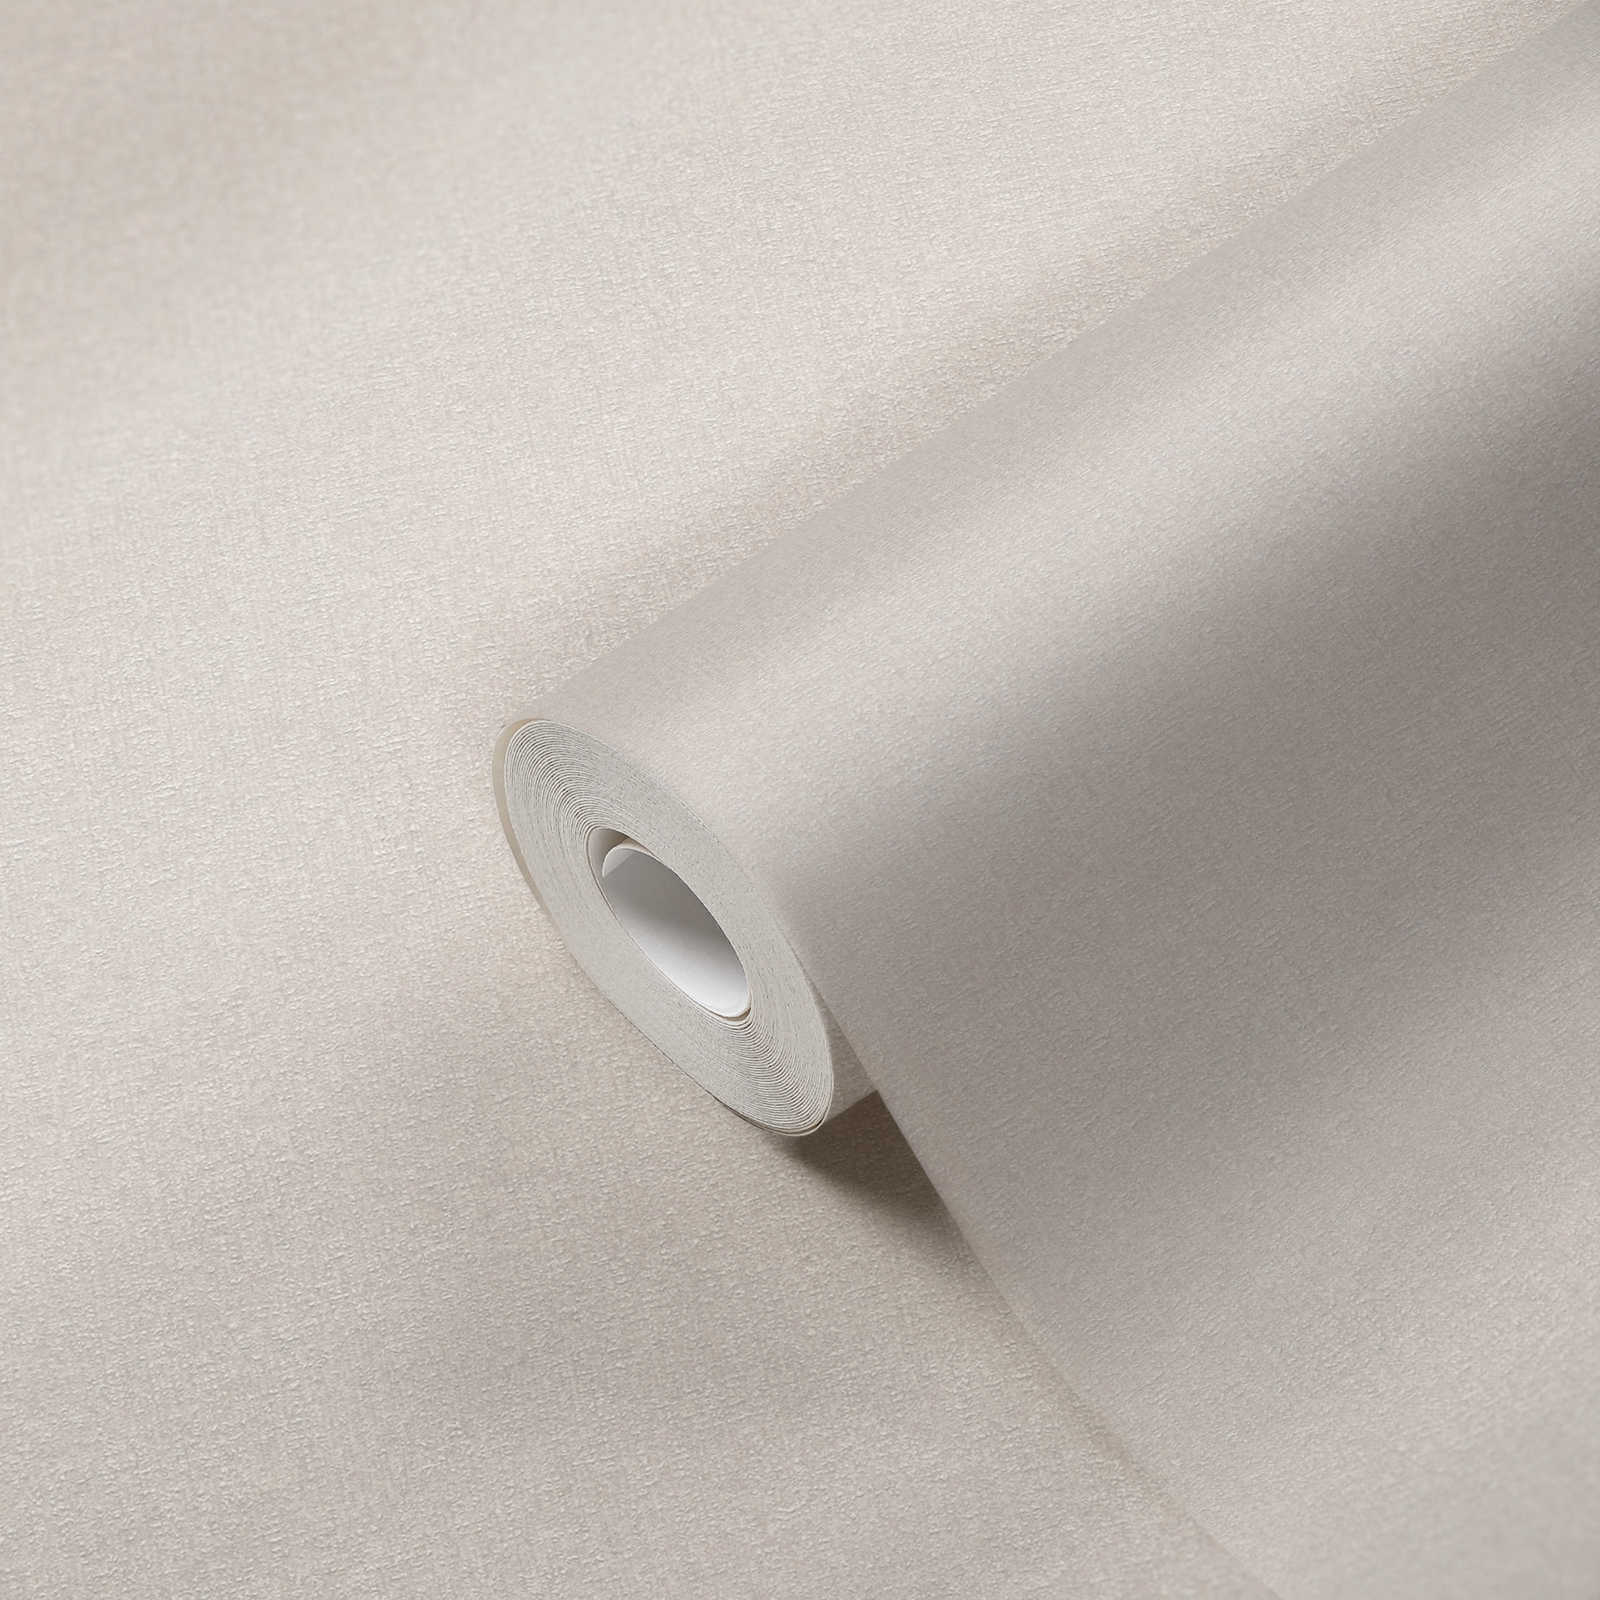             Papel pintado no tejido de estructura fina - crema, blanco, gris
        